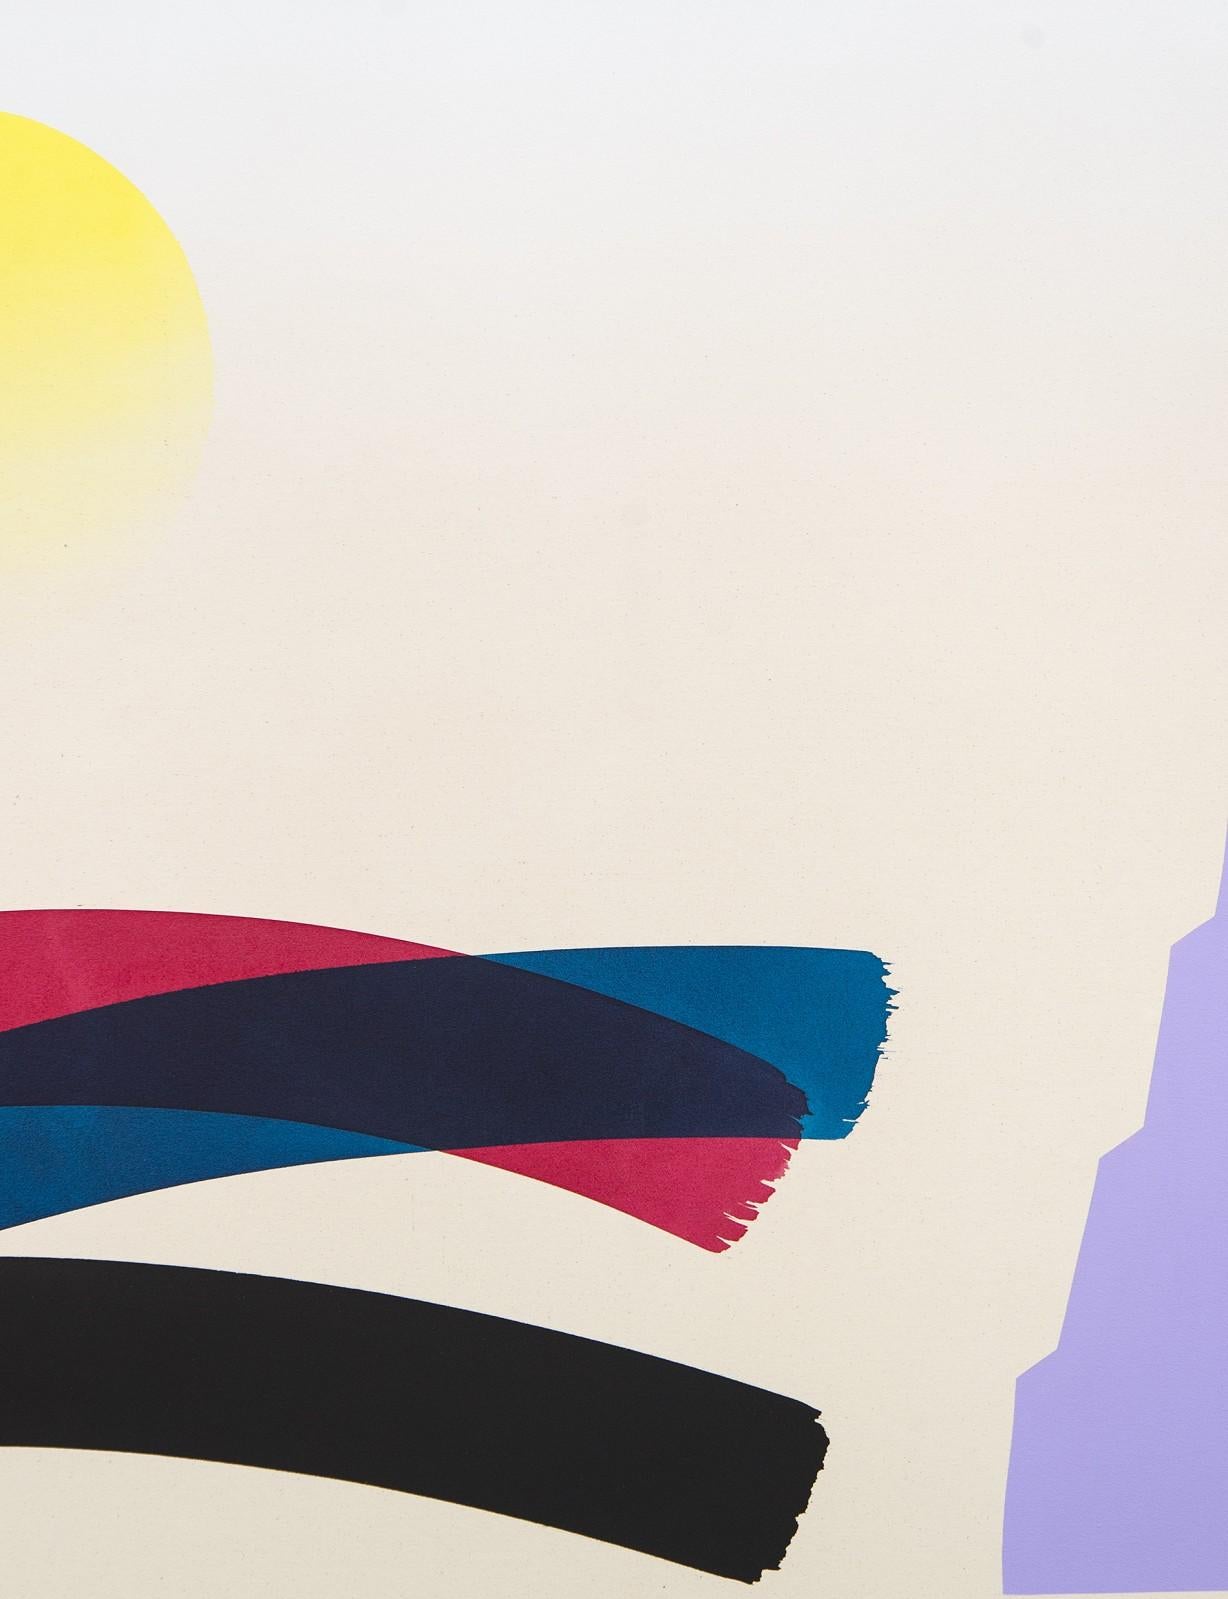 Großes blaues und lavendelfarbenes Gemälde mit verblüffender Sonne - farbenfrohes, abstraktes Gemälde, Acryl auf Leinwand (Abstrakt), Painting, von Aron Hill